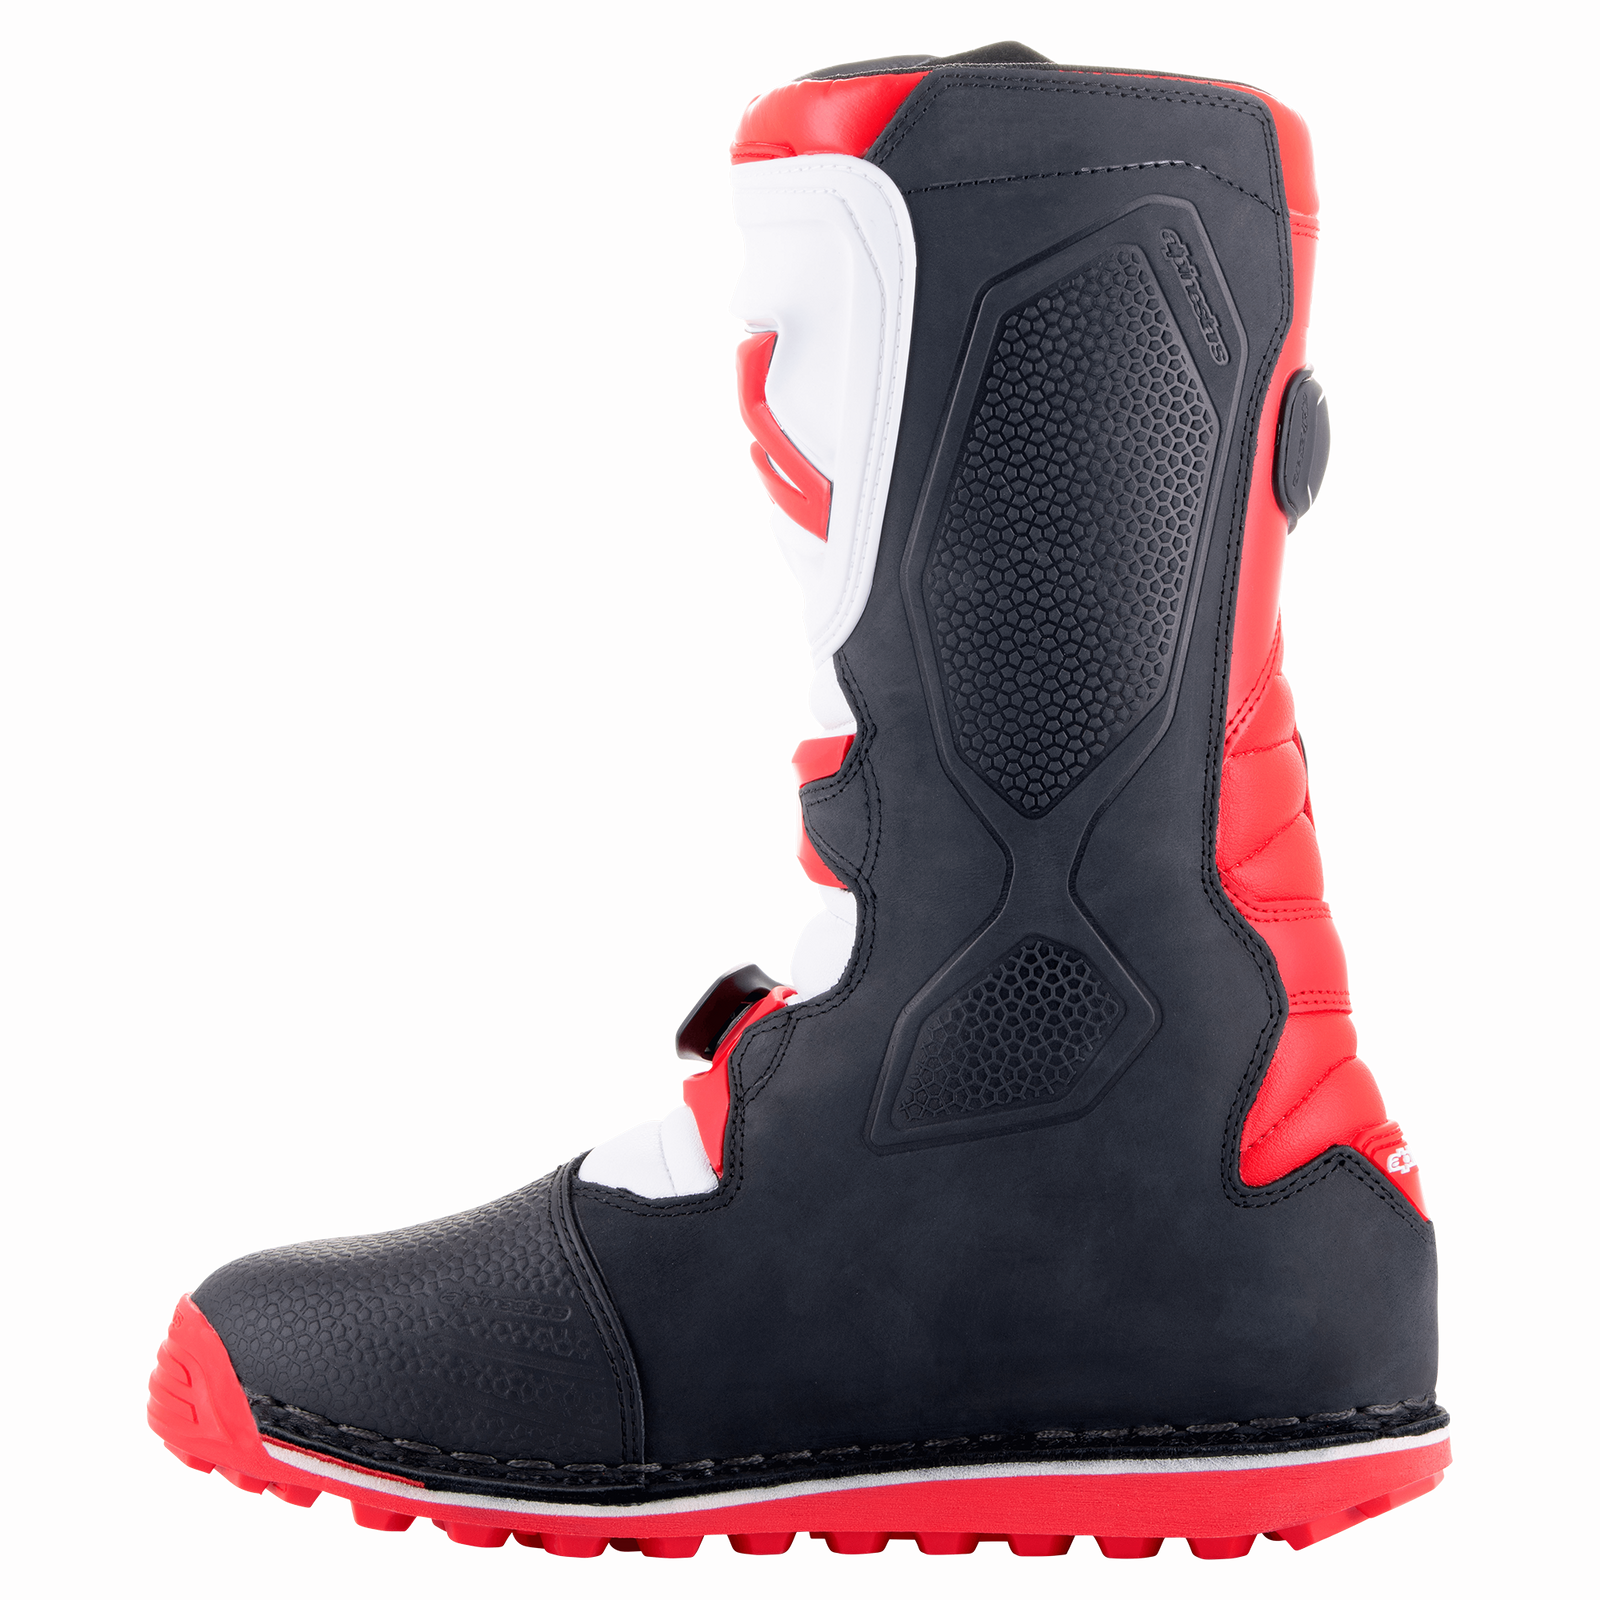 Tech-T Boots